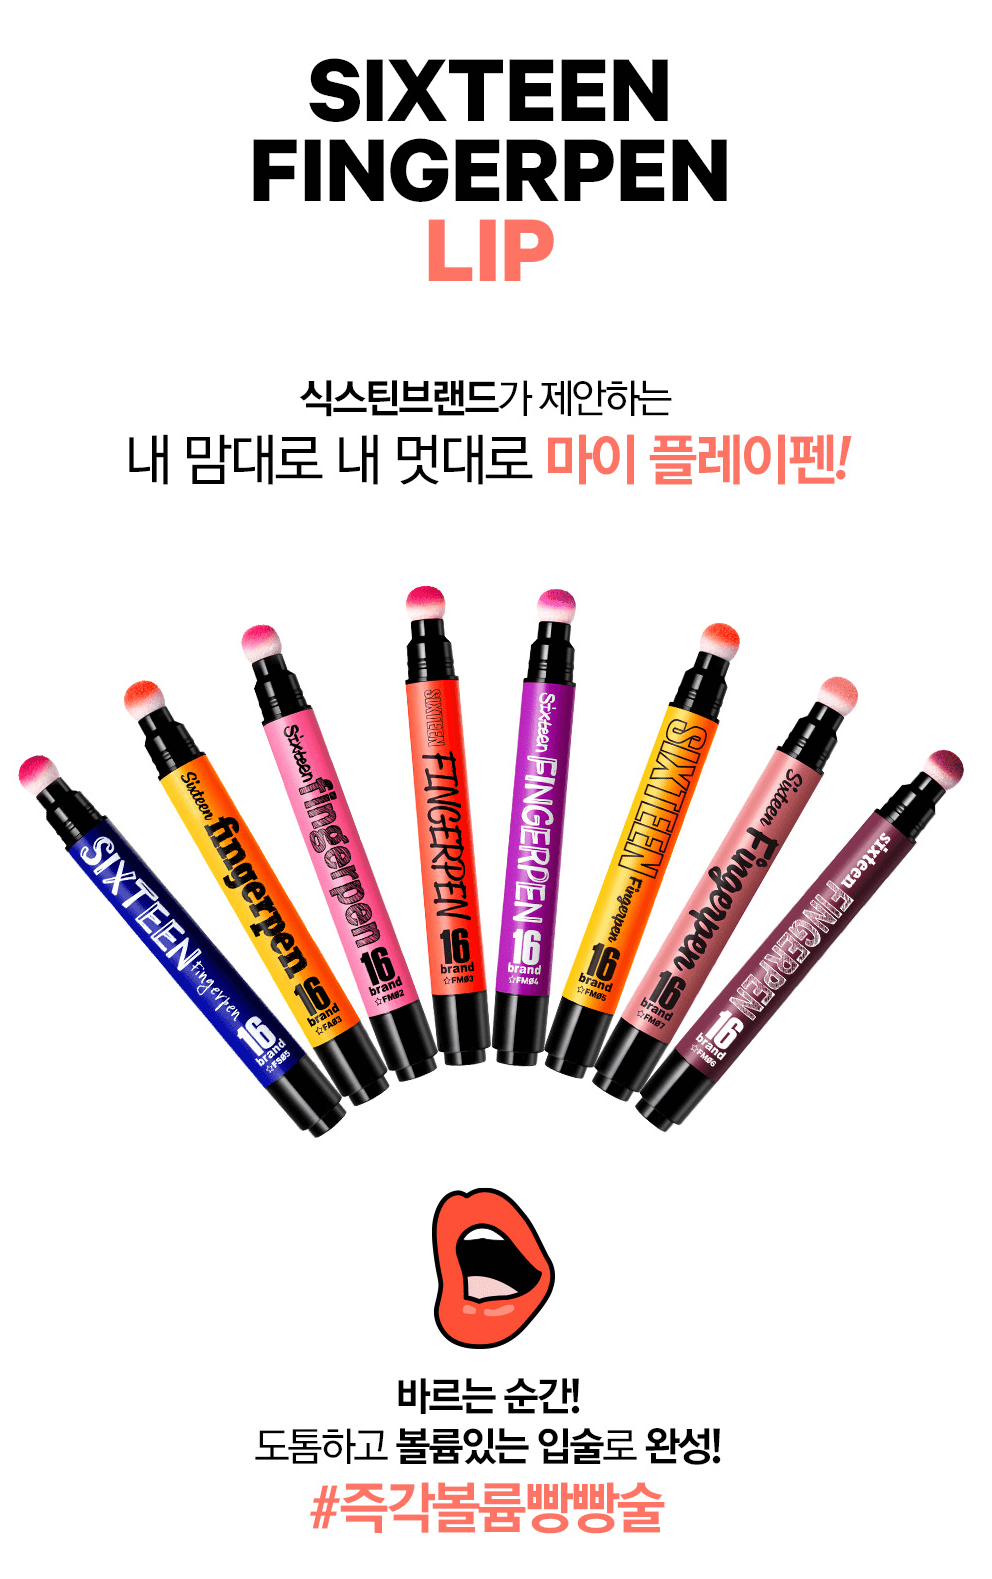 SIXTEEN Brand,16 Brand,SIXTEEN Brand korea,SIXTEEN Brand Finger Pen,SIXTEEN Brand Finger Pen ราคา,SIXTEEN Brand Finger Pen รีวิว,SIXTEEN Brand Finger Pen pantip